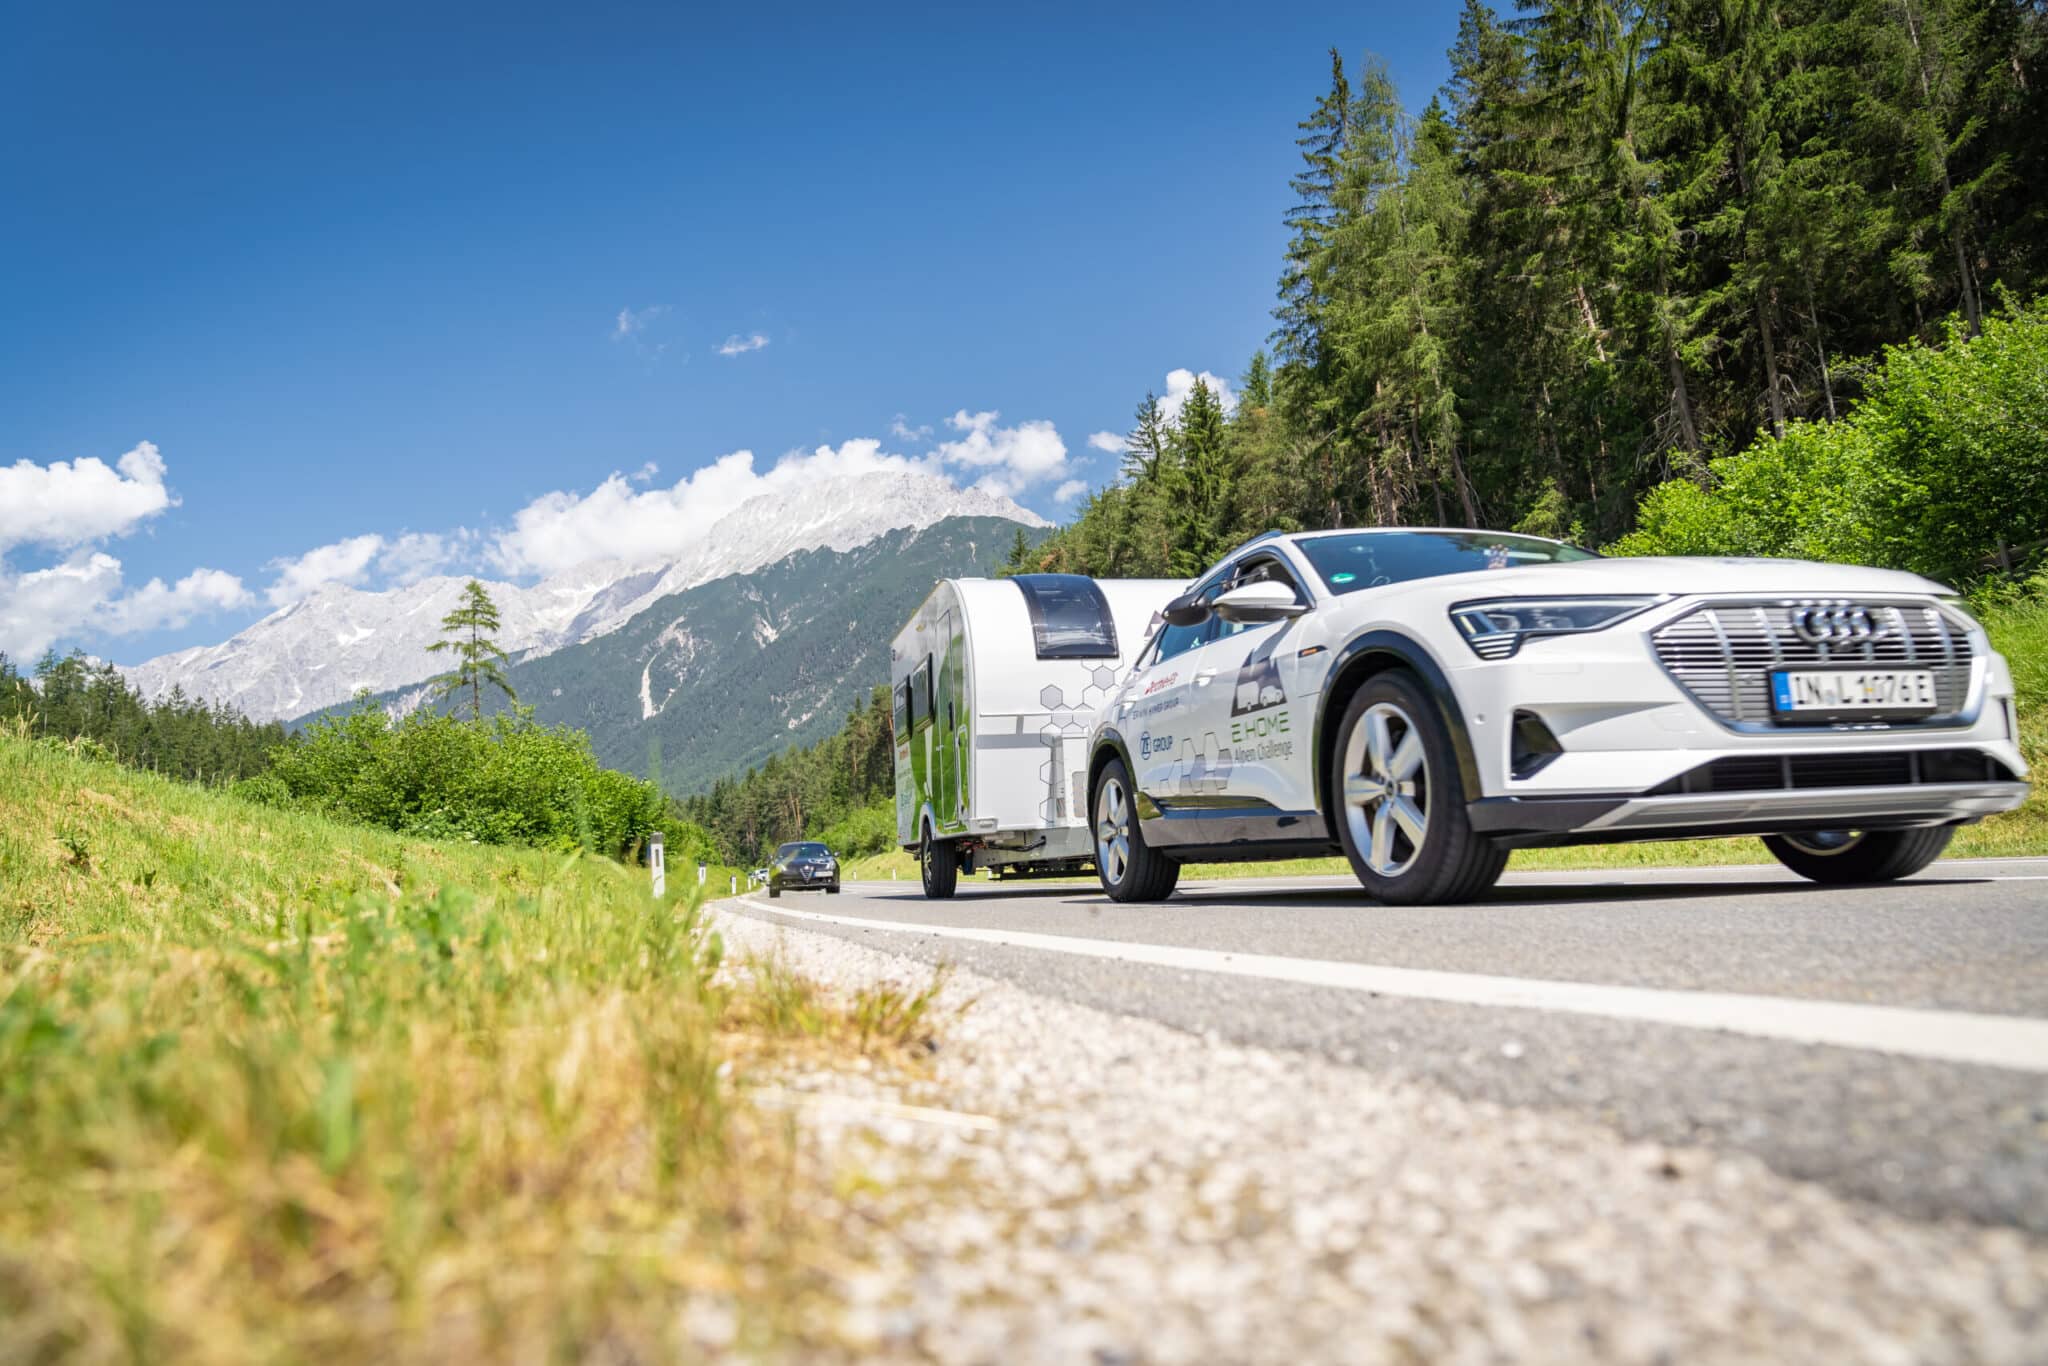 E.HOME Alpen Challenge - Praxistest für den ersten elektrisch angetriebenen Caravan | FFK 0315 DSC08638 scaled 1 scaled